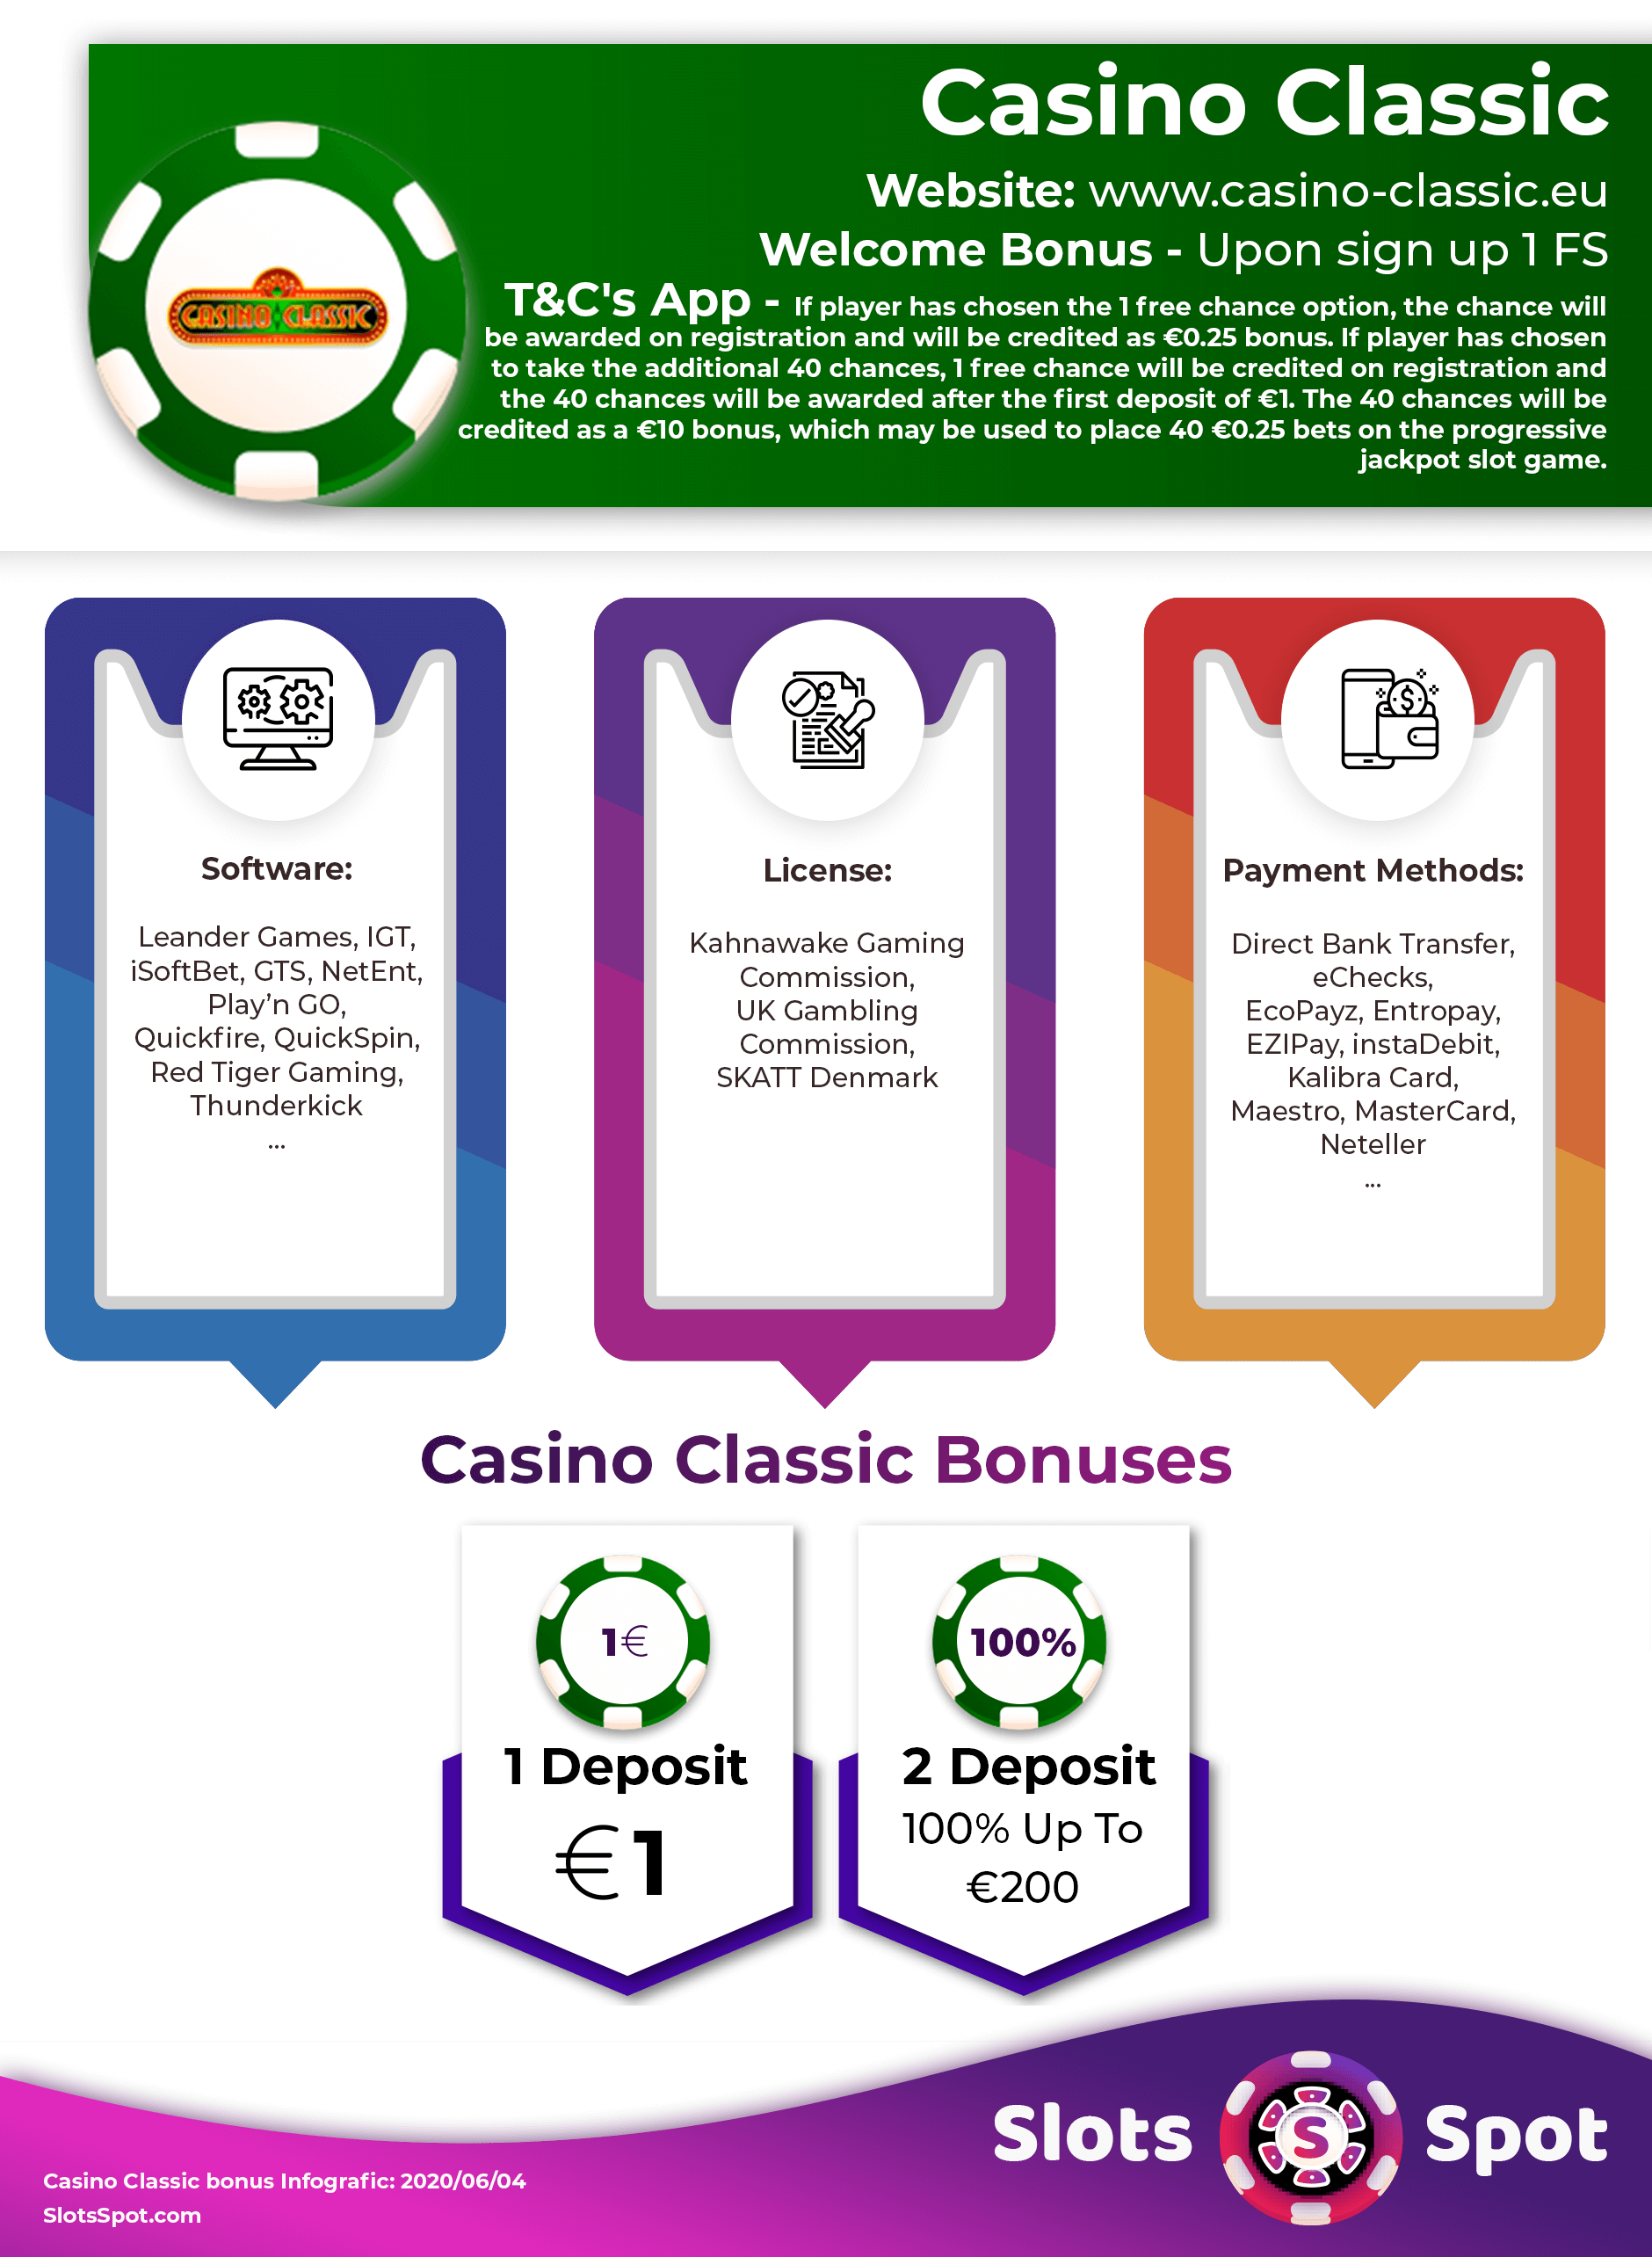 Casino rewards account